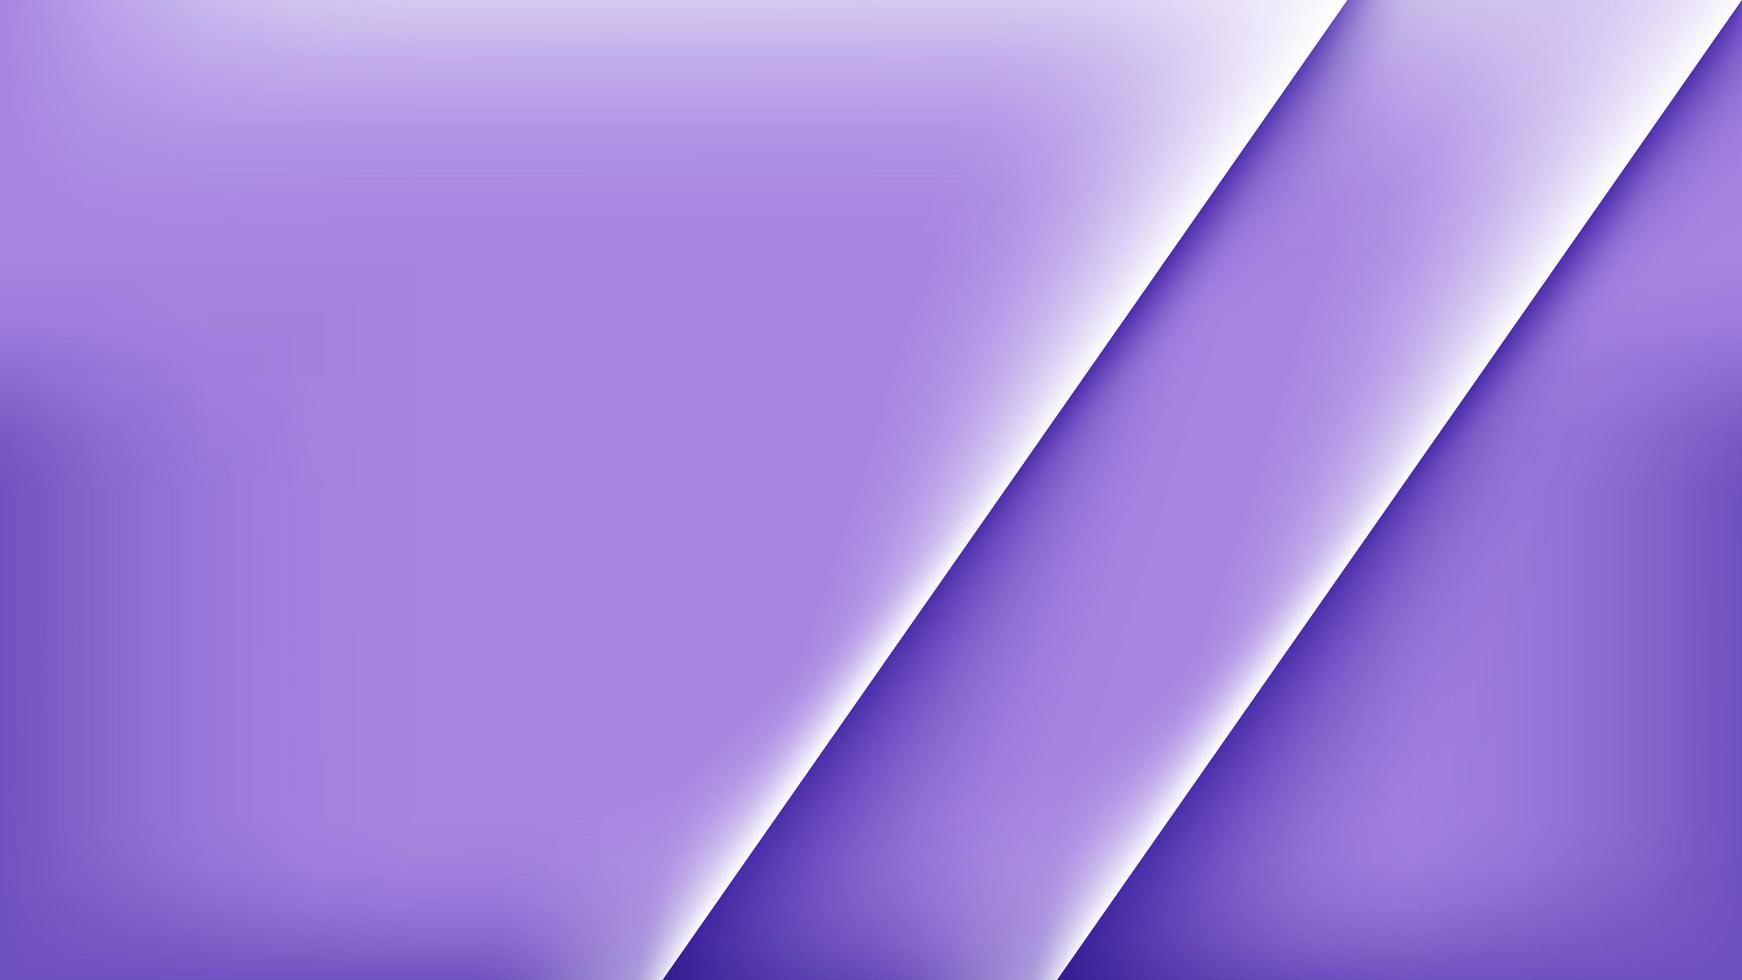 couleur violette d'arrière-plan minimale et il y a deux barres obliques sur la droite, adaptées aux besoins de conception, d'affichage, de site Web, d'interface utilisateur et autres photo